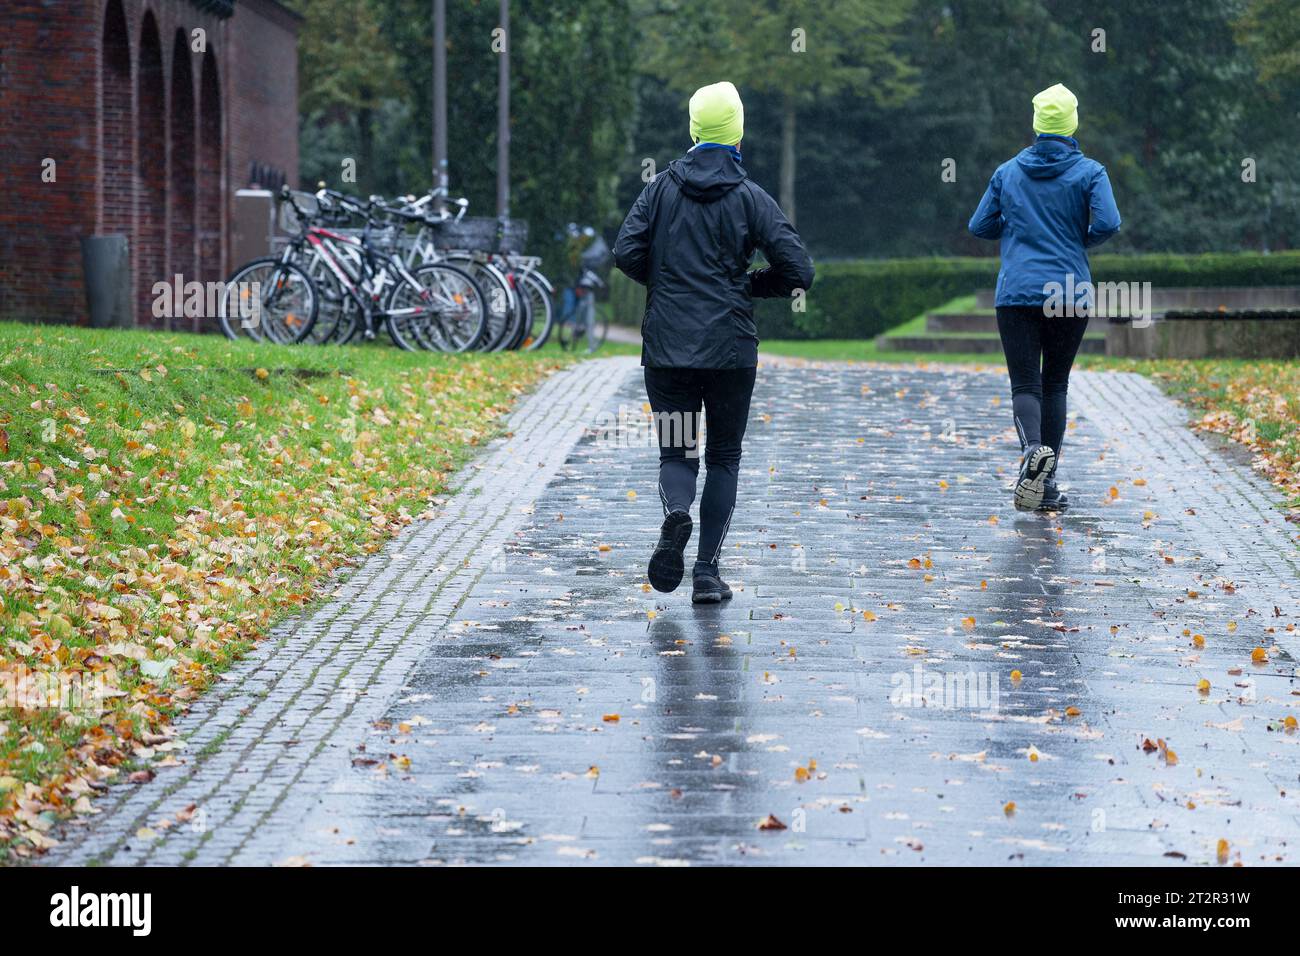 Deux personnes féminines sportives de derrière avec des casquettes jaunes néon jogging sous la pluie à travers un parc d'automne, il n'y a pas de mauvais temps pour acte de plein air sain Banque D'Images